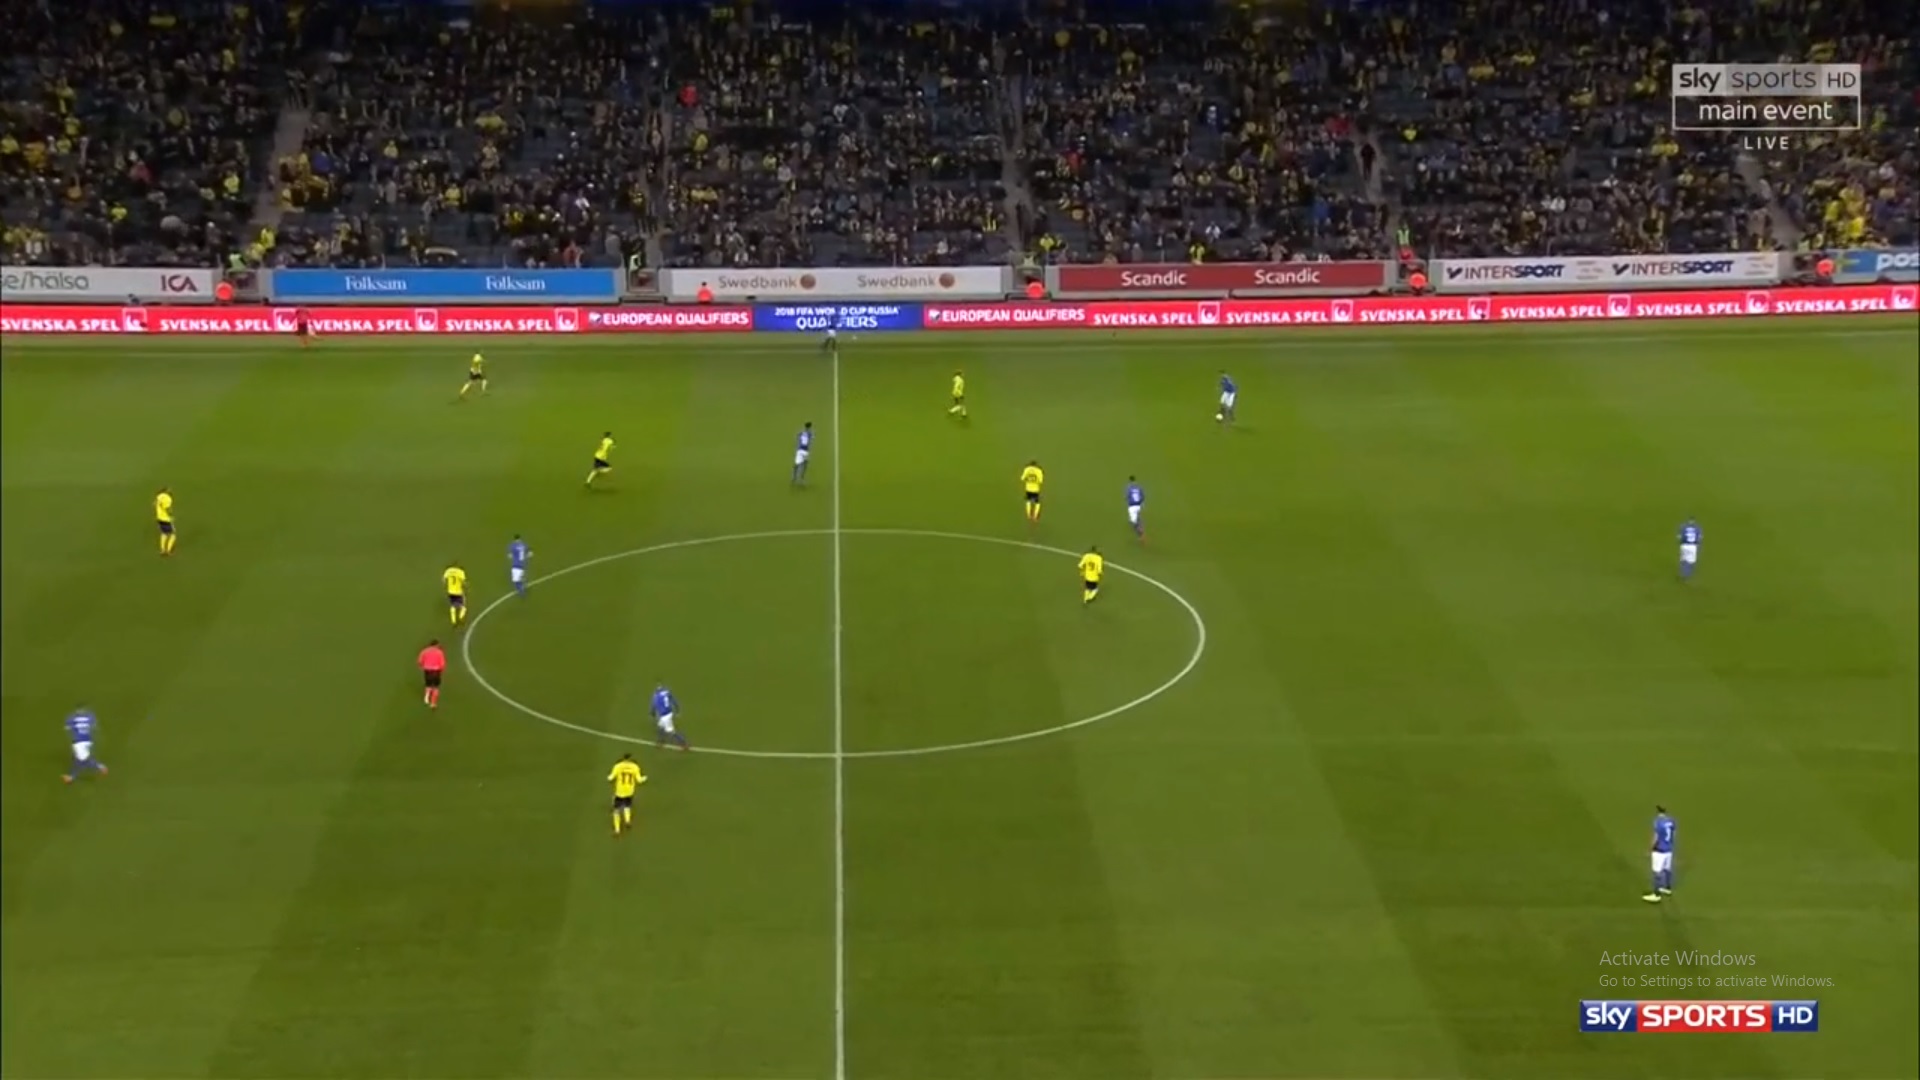 دانلود بازی کامل سوئد - ایتالیا (پلی آف جام جهانی 2018)